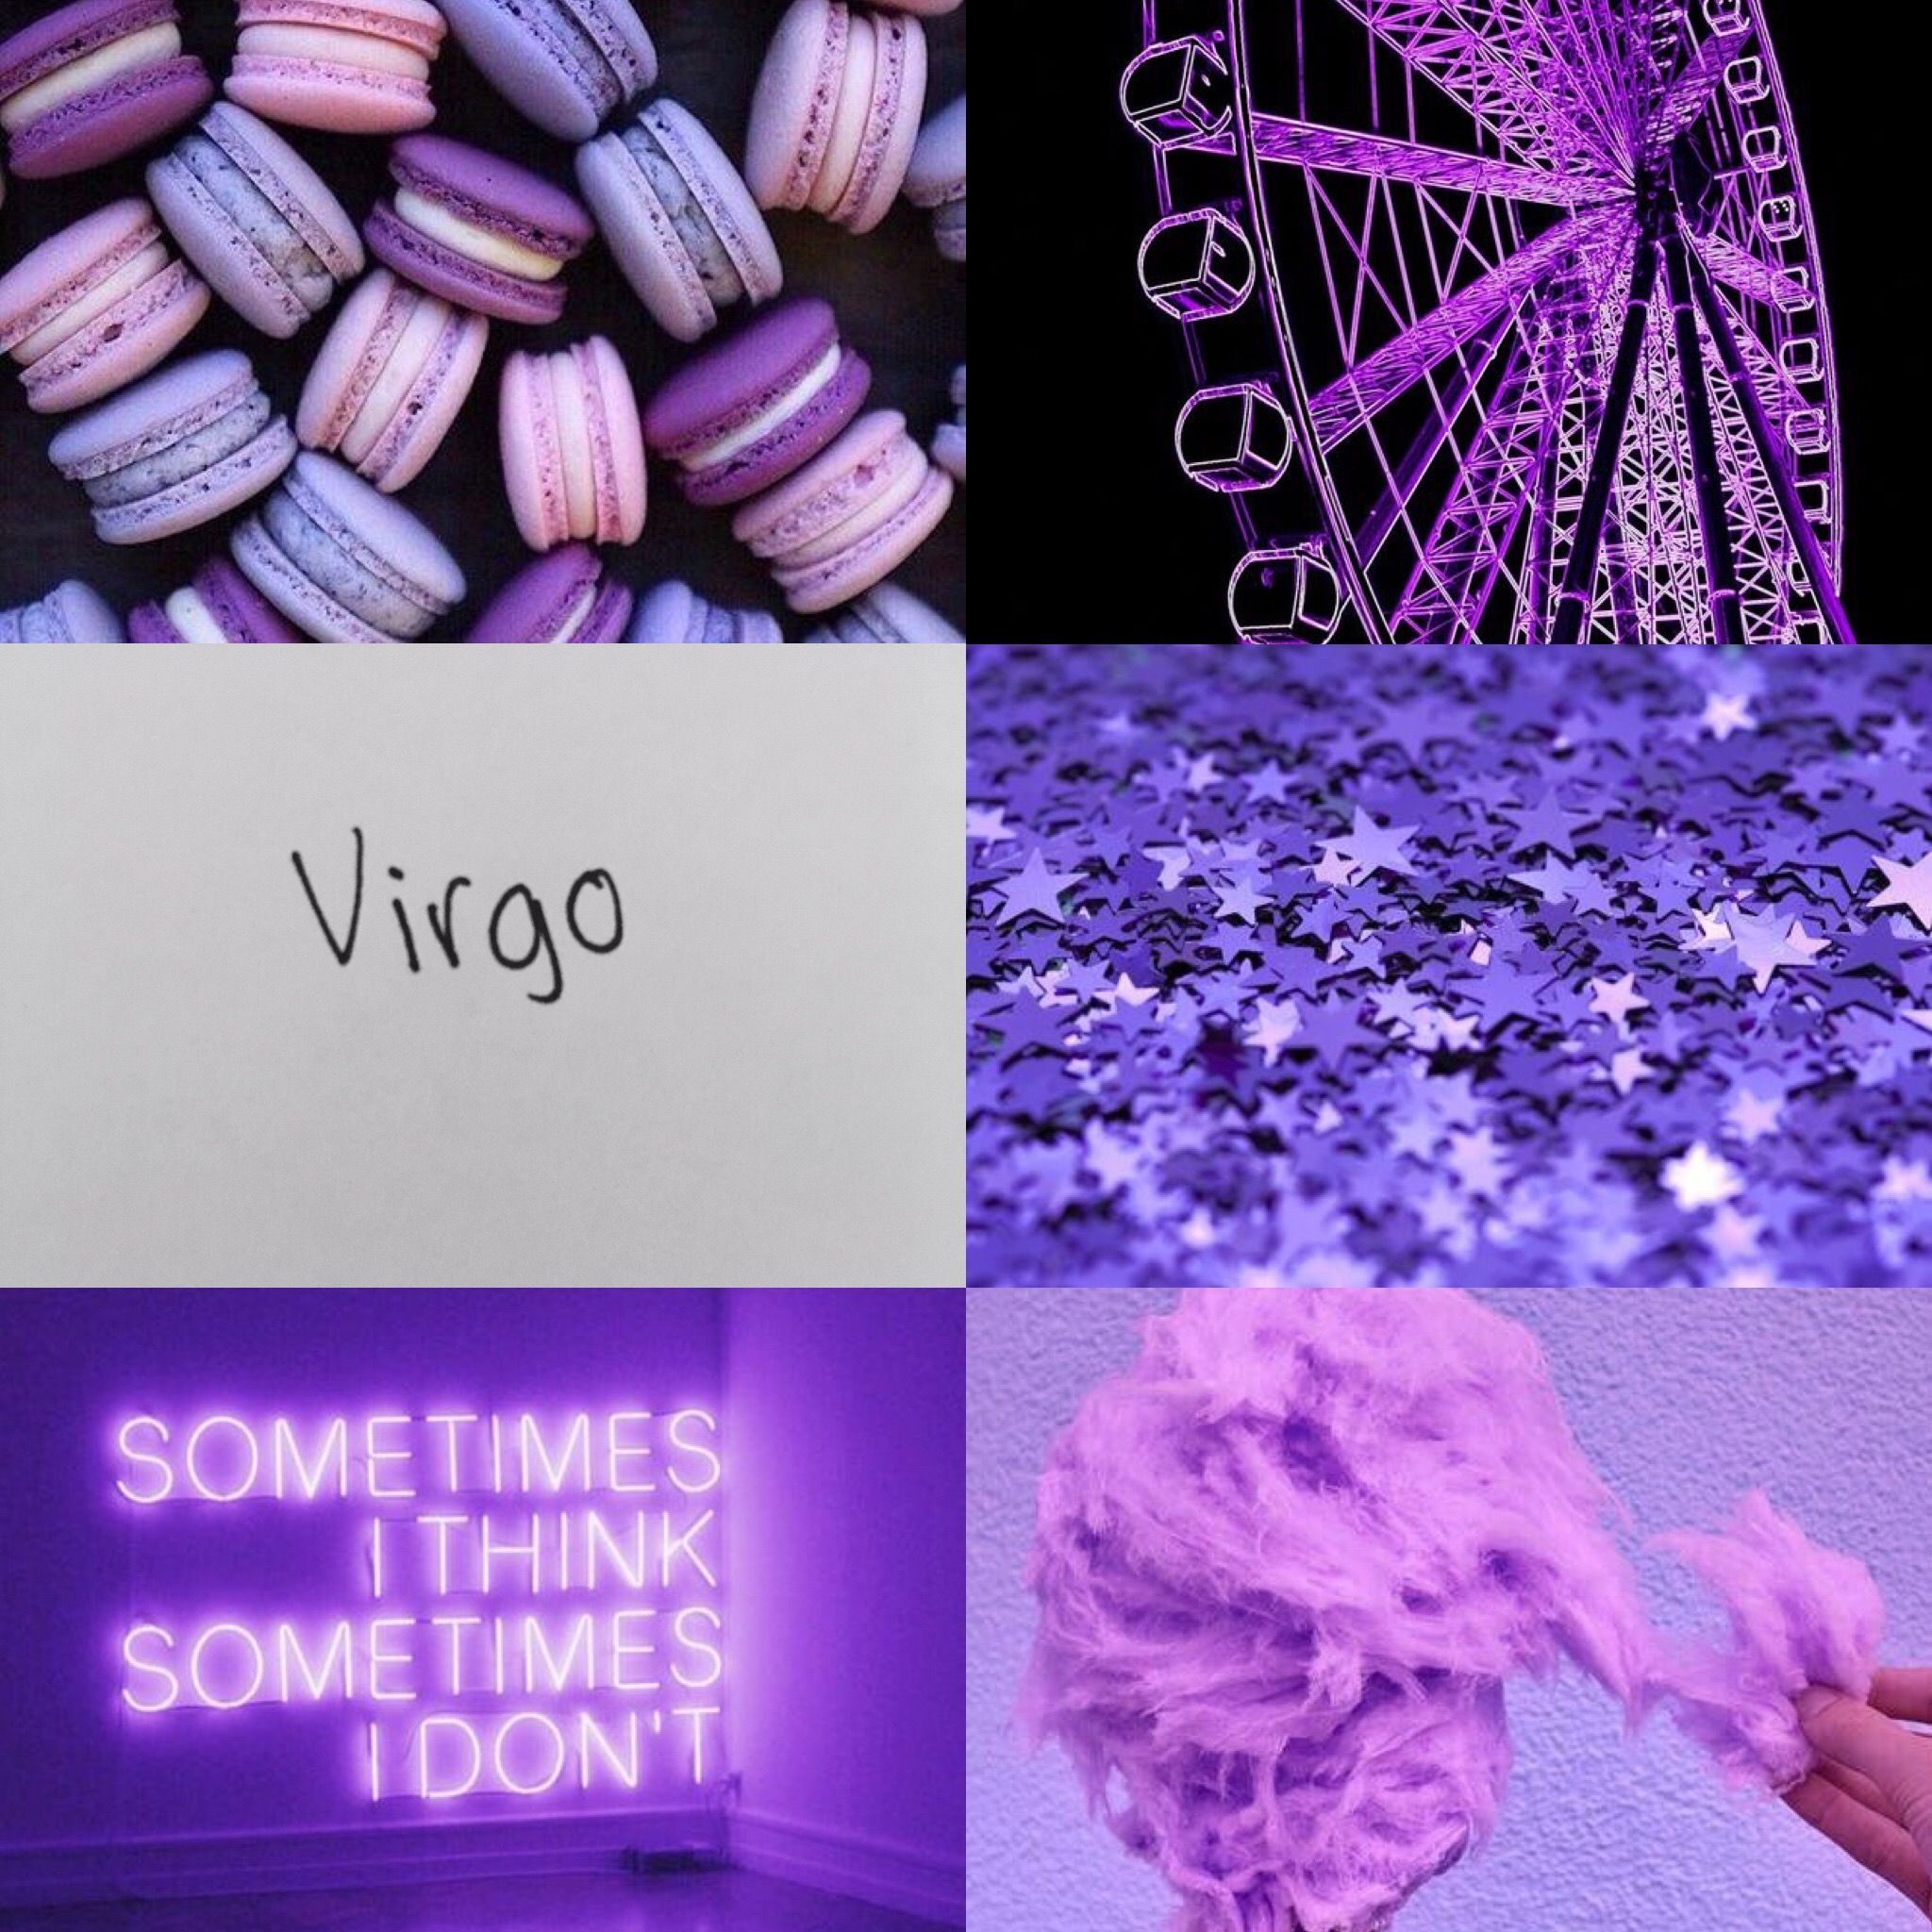 Aesthetic background for virgo - Virgo